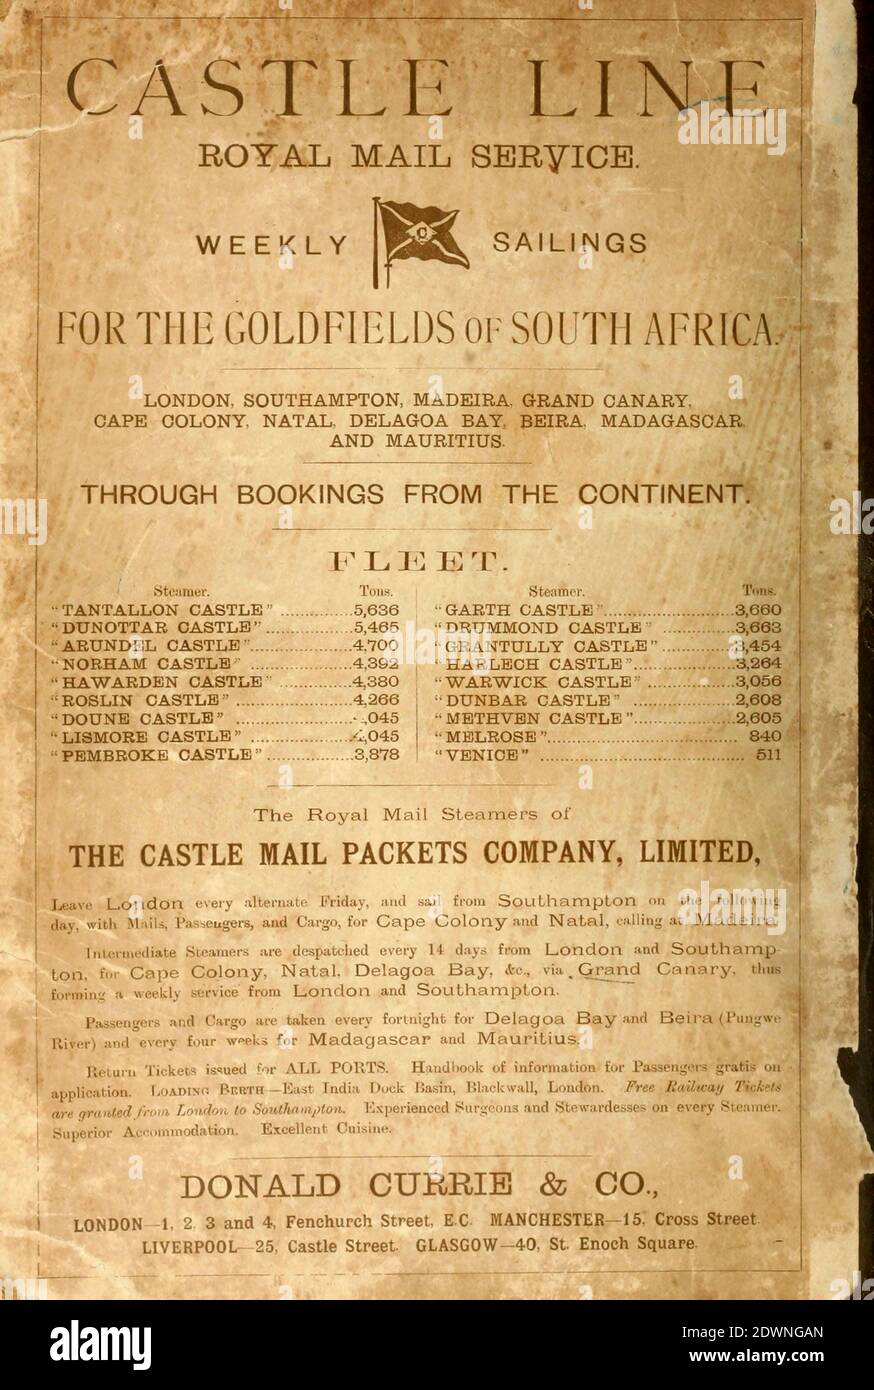 Castle Line Royal Mail Service Anzeige und Flottendetails (1895) aus dem Buch "The Castle Line Atlas of South Africa" : Eine Serie von 16 Tafeln, gedruckt in Farbe, mit 30 Karten und Diagramme, mit einem Bericht über die geographischen Merkmale, das Klima, die Mineral-und andere Ressourcen, und die Geschichte von Südafrika. Und ein Index von über 6,000 Namen Stockfoto